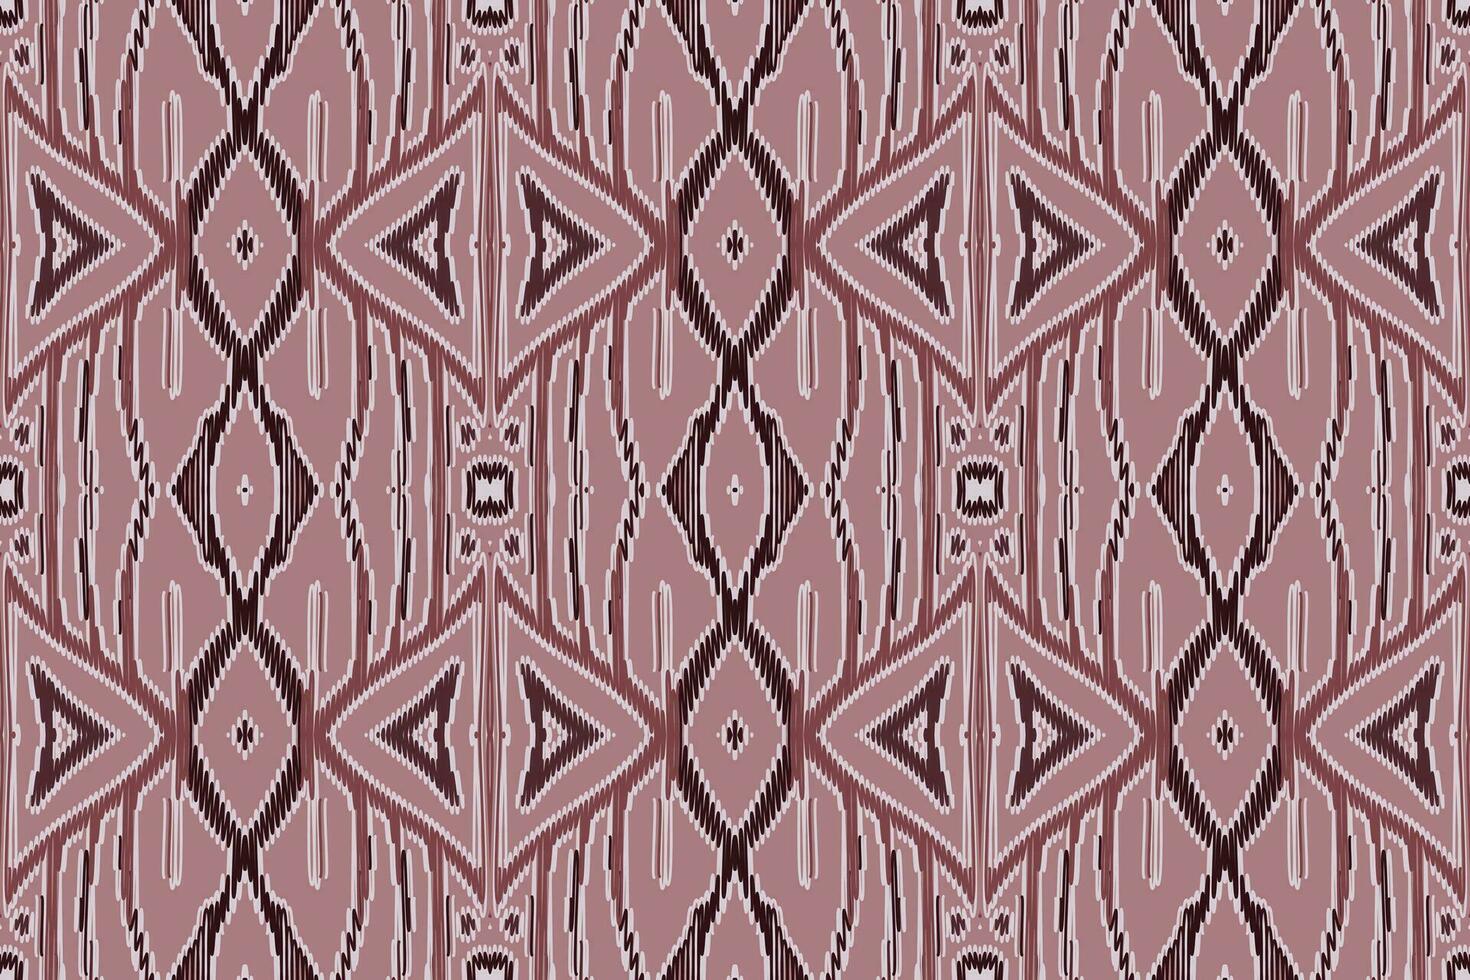 seta tessuto patola sari modello senza soluzione di continuità australiano aborigeno modello motivo ricamo, ikat ricamo vettore design per Stampa figura tribale inchiostro su stoffa patola sari